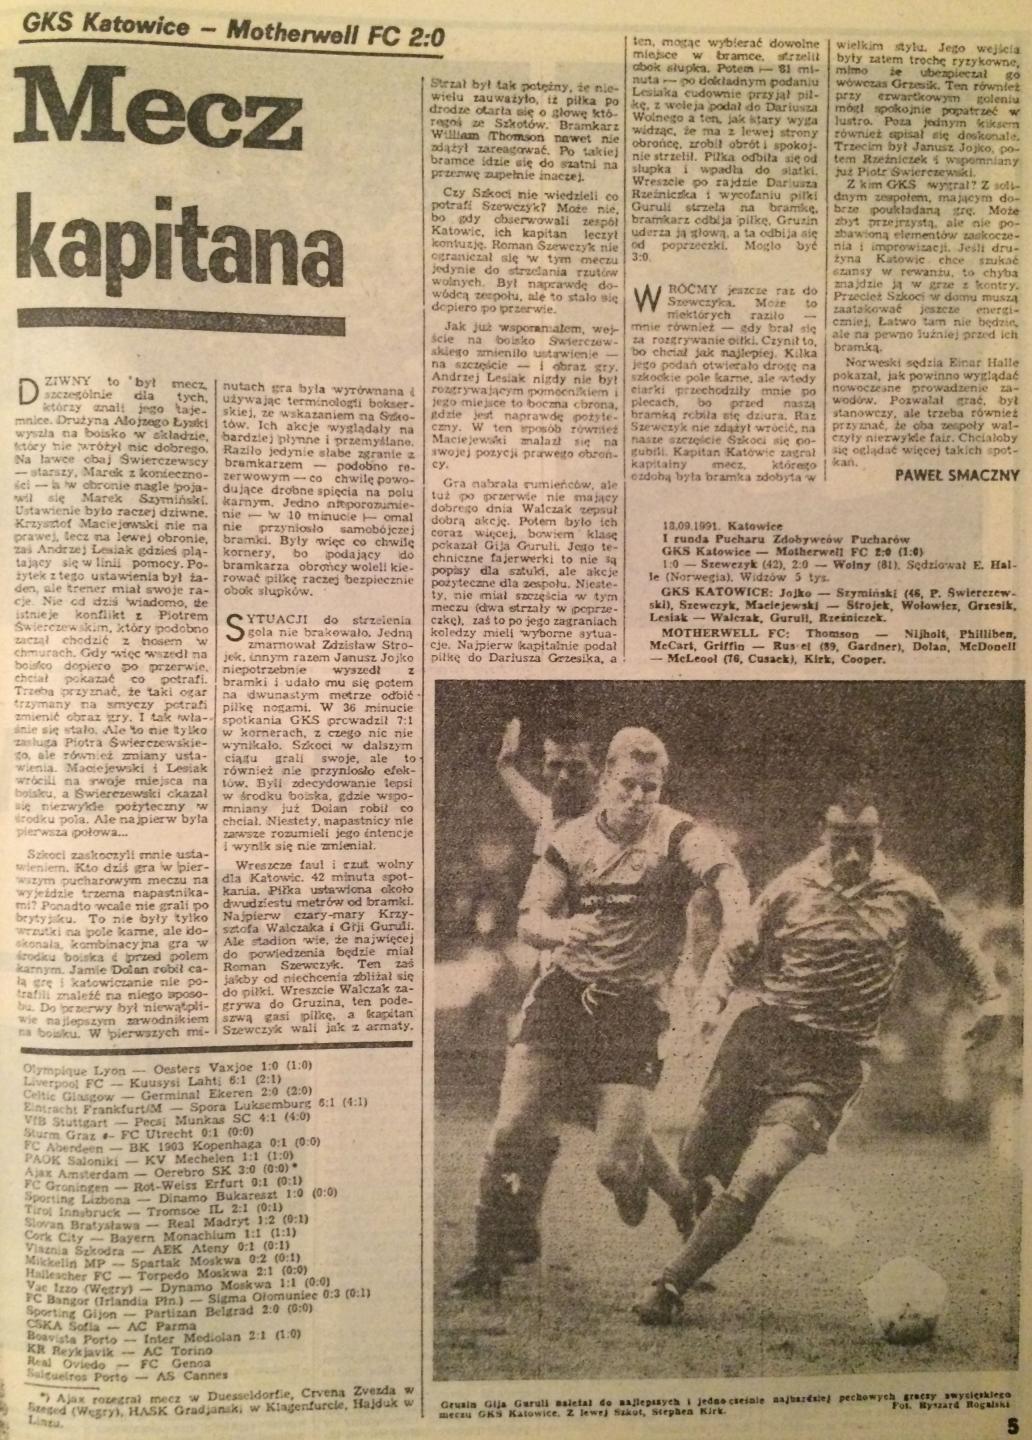 Piłka Nożna po GKS Katowice - Motherwell FC 2:0 (18.09.1991)